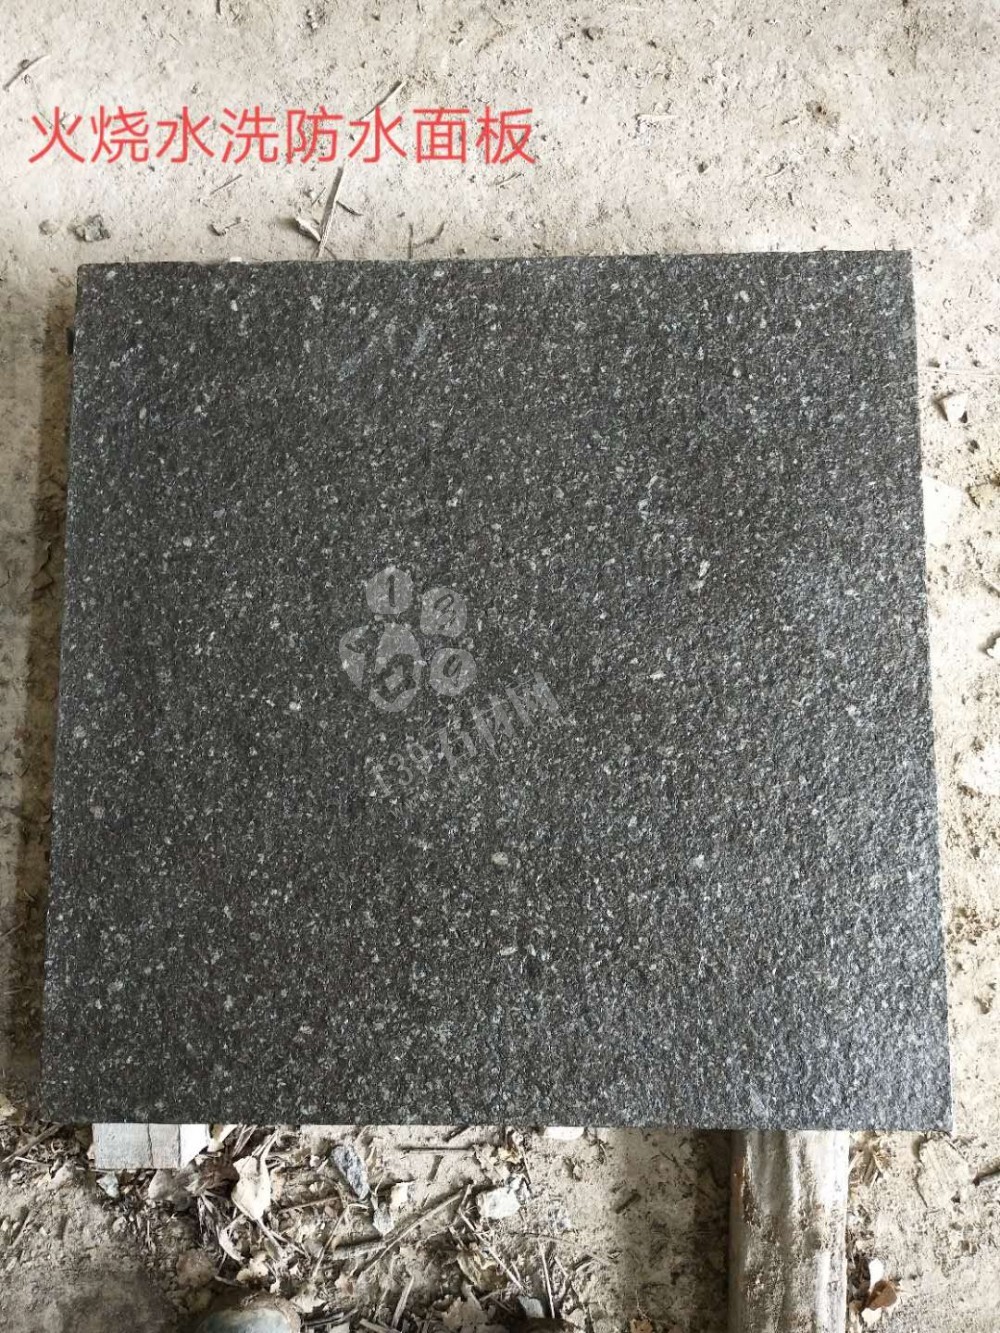 广西博白黑石材工程应用中的几种表面介绍（图文）